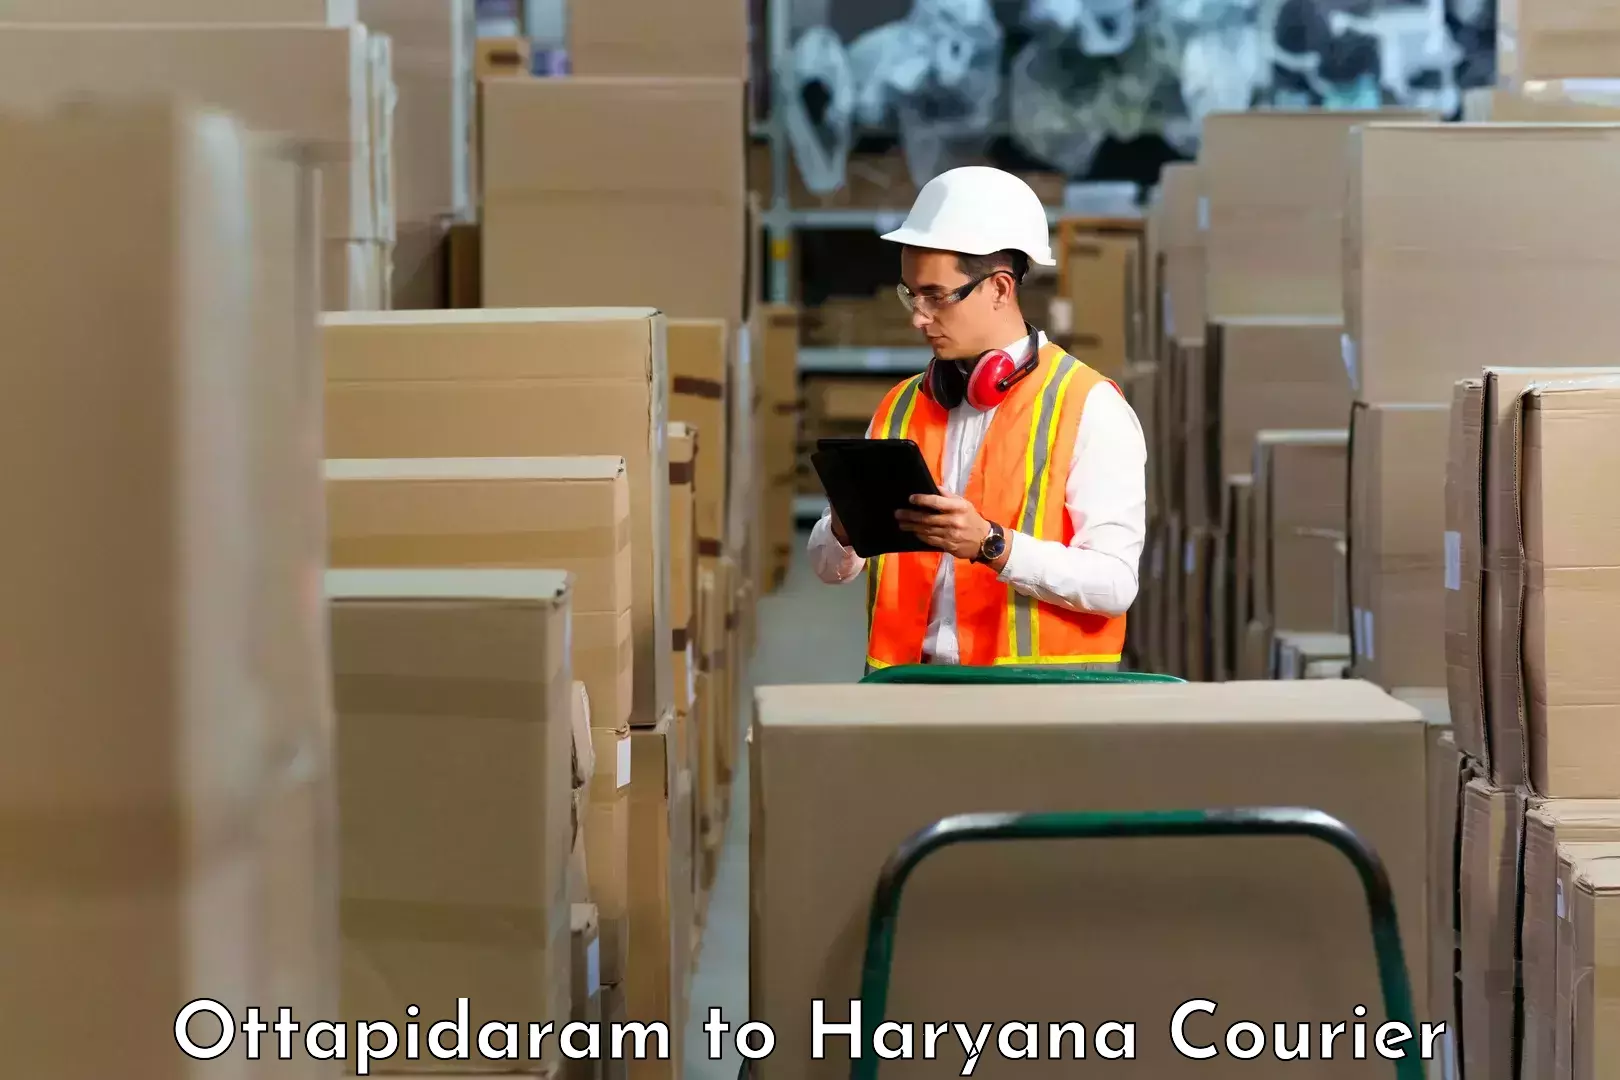 Professional courier handling Ottapidaram to Gohana